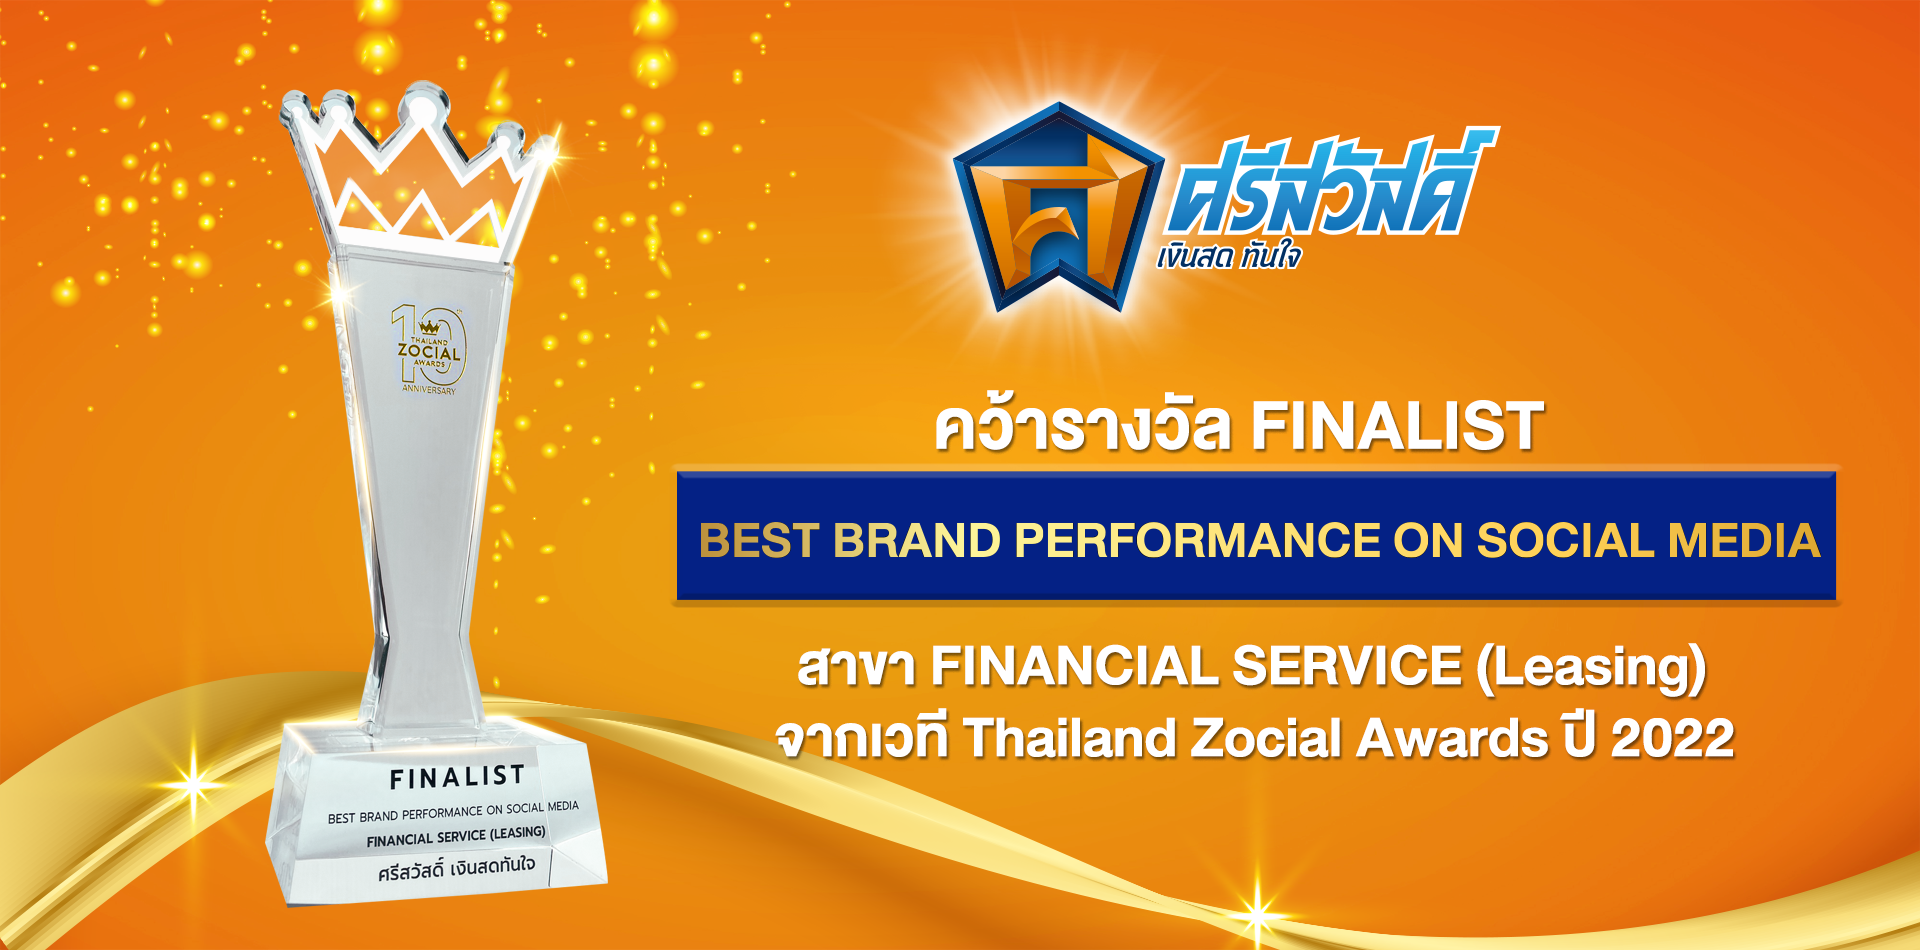 'ศรีสวัสดิ์' ปังรับปีเสือทอง เข้ารอบ Finalist สาย Leasing เวที Thailand Zocial Awards 2022